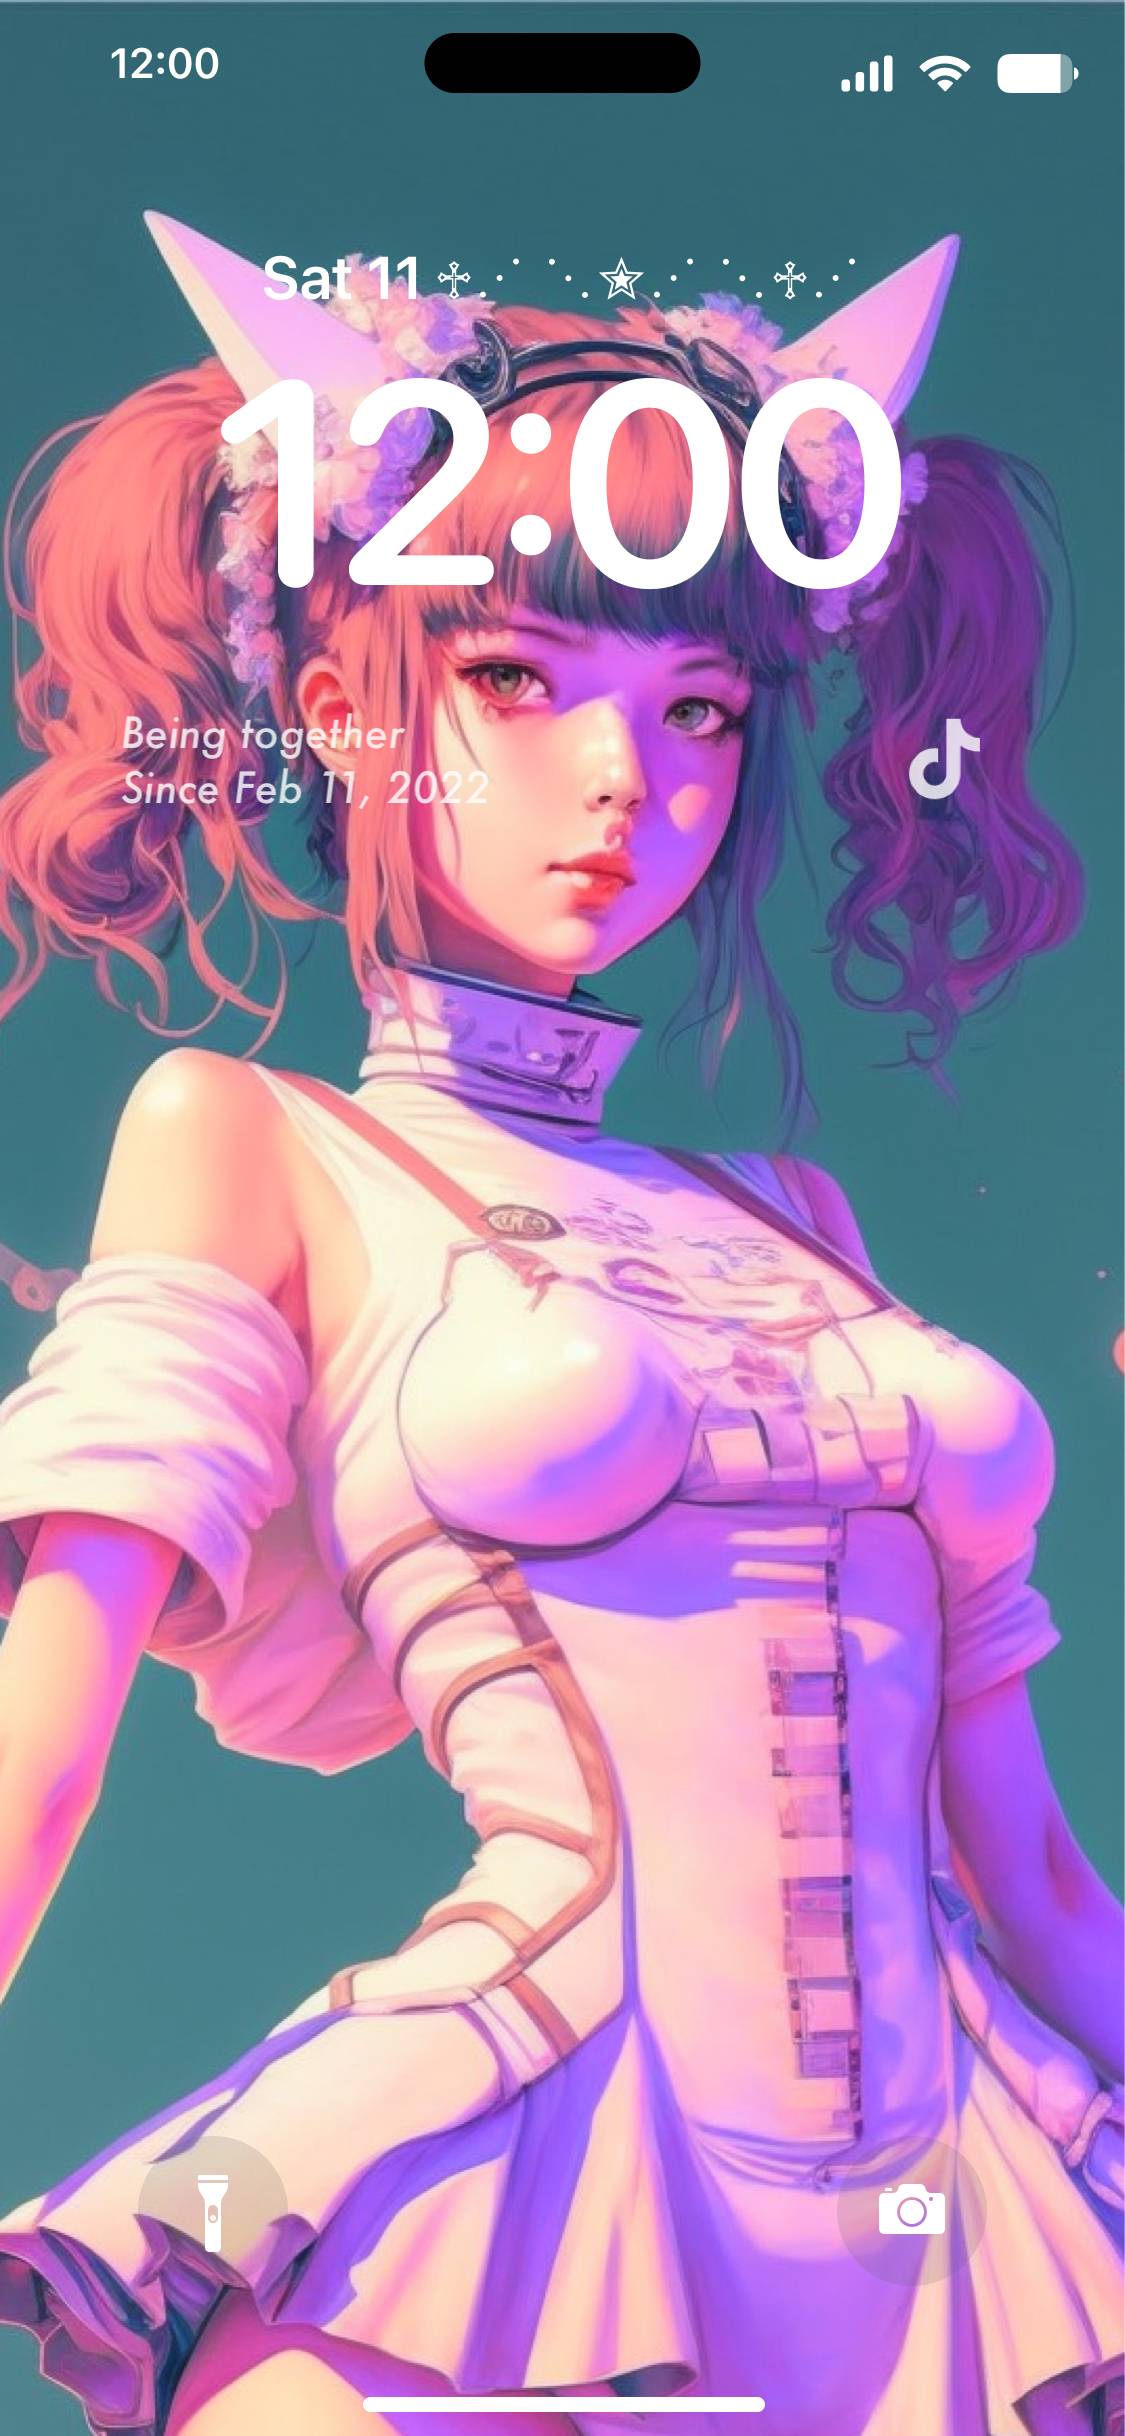 Cyberpunk girl lock screen Lockscreen[6J3XZiCvg7JlsTzNcMWe]